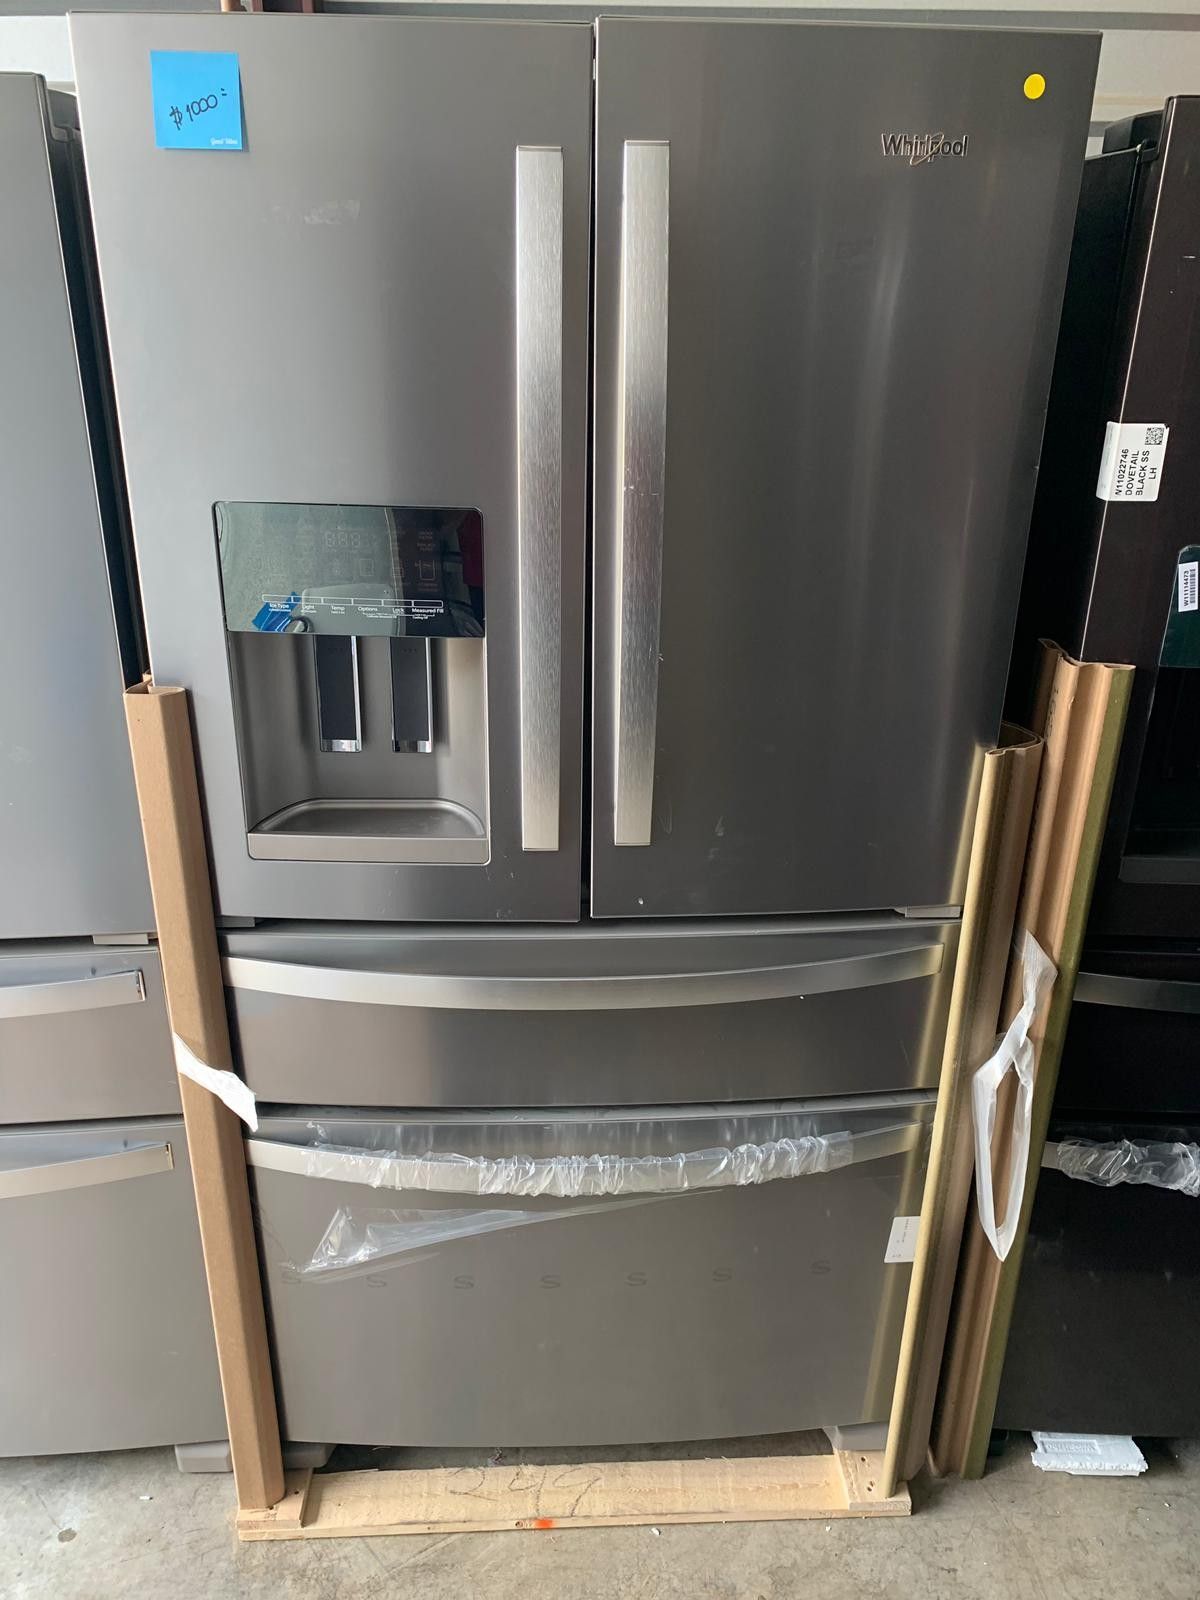 Refrigerator Whirlpool Stainless Steel 36' 4 door. New. Warranty